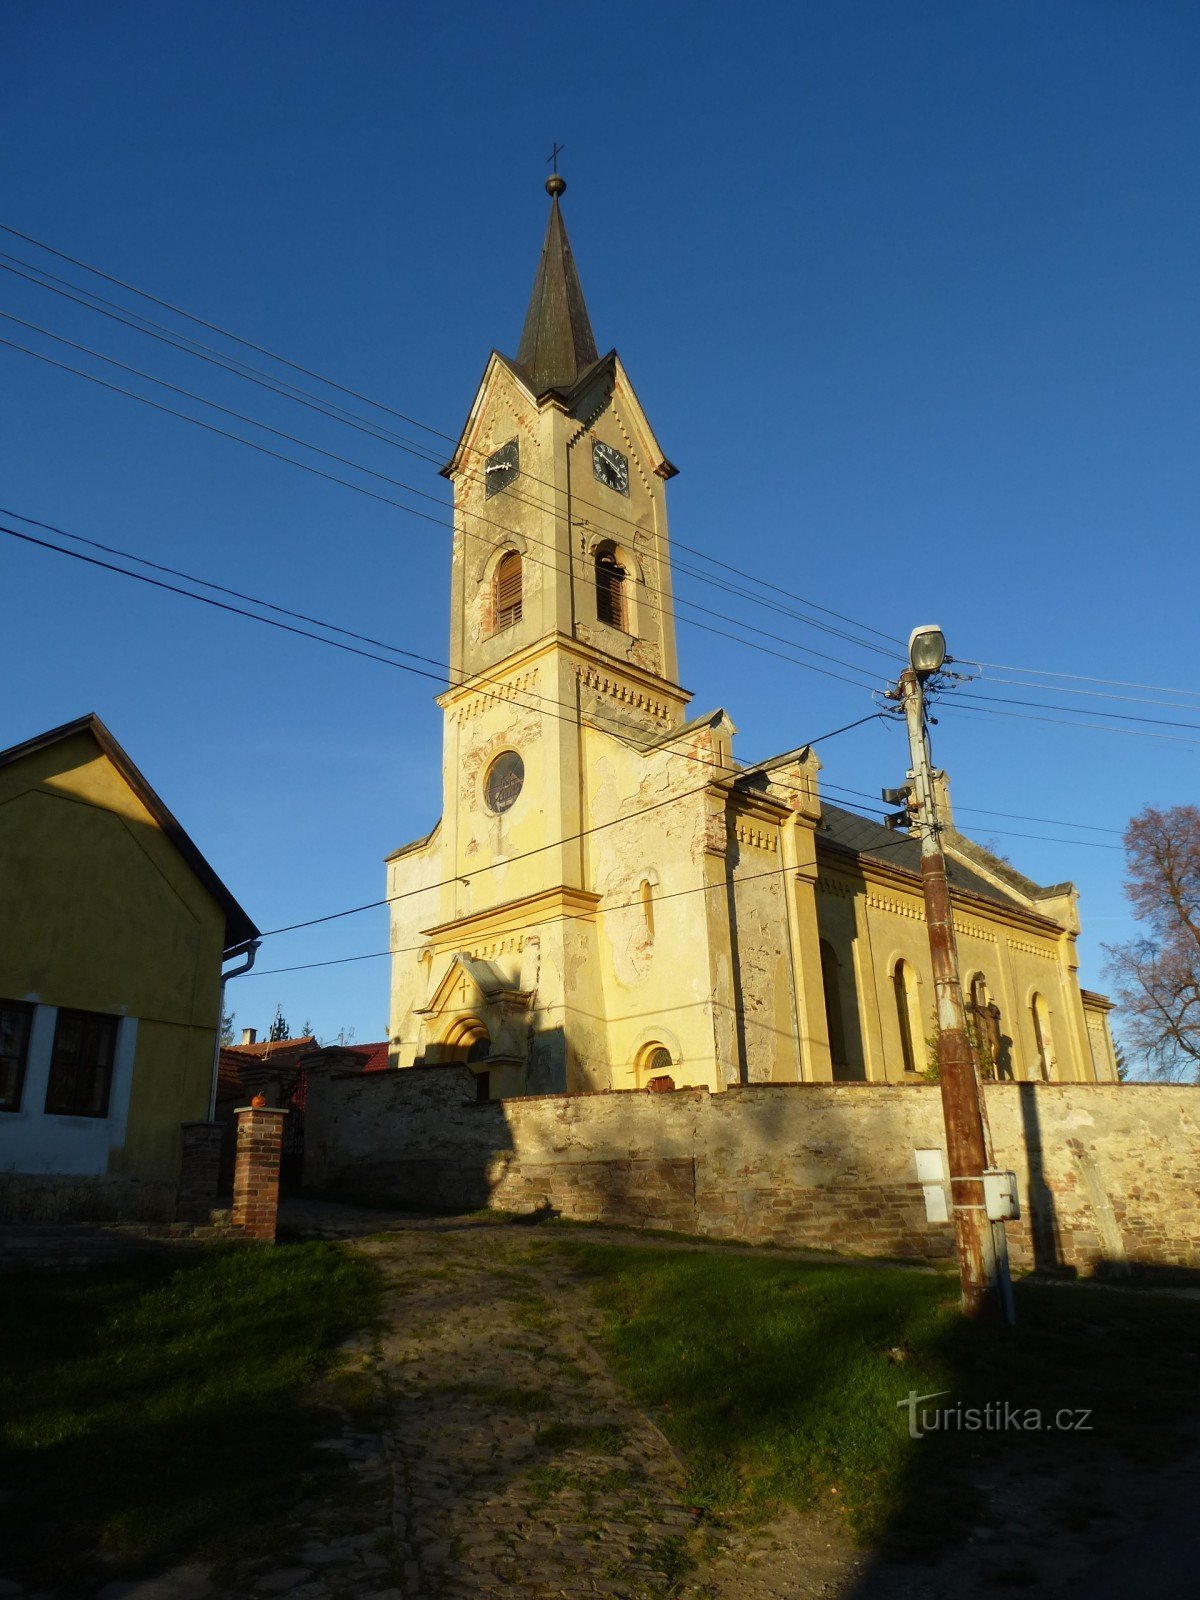 Biserica Sf. Matouš în Malotice